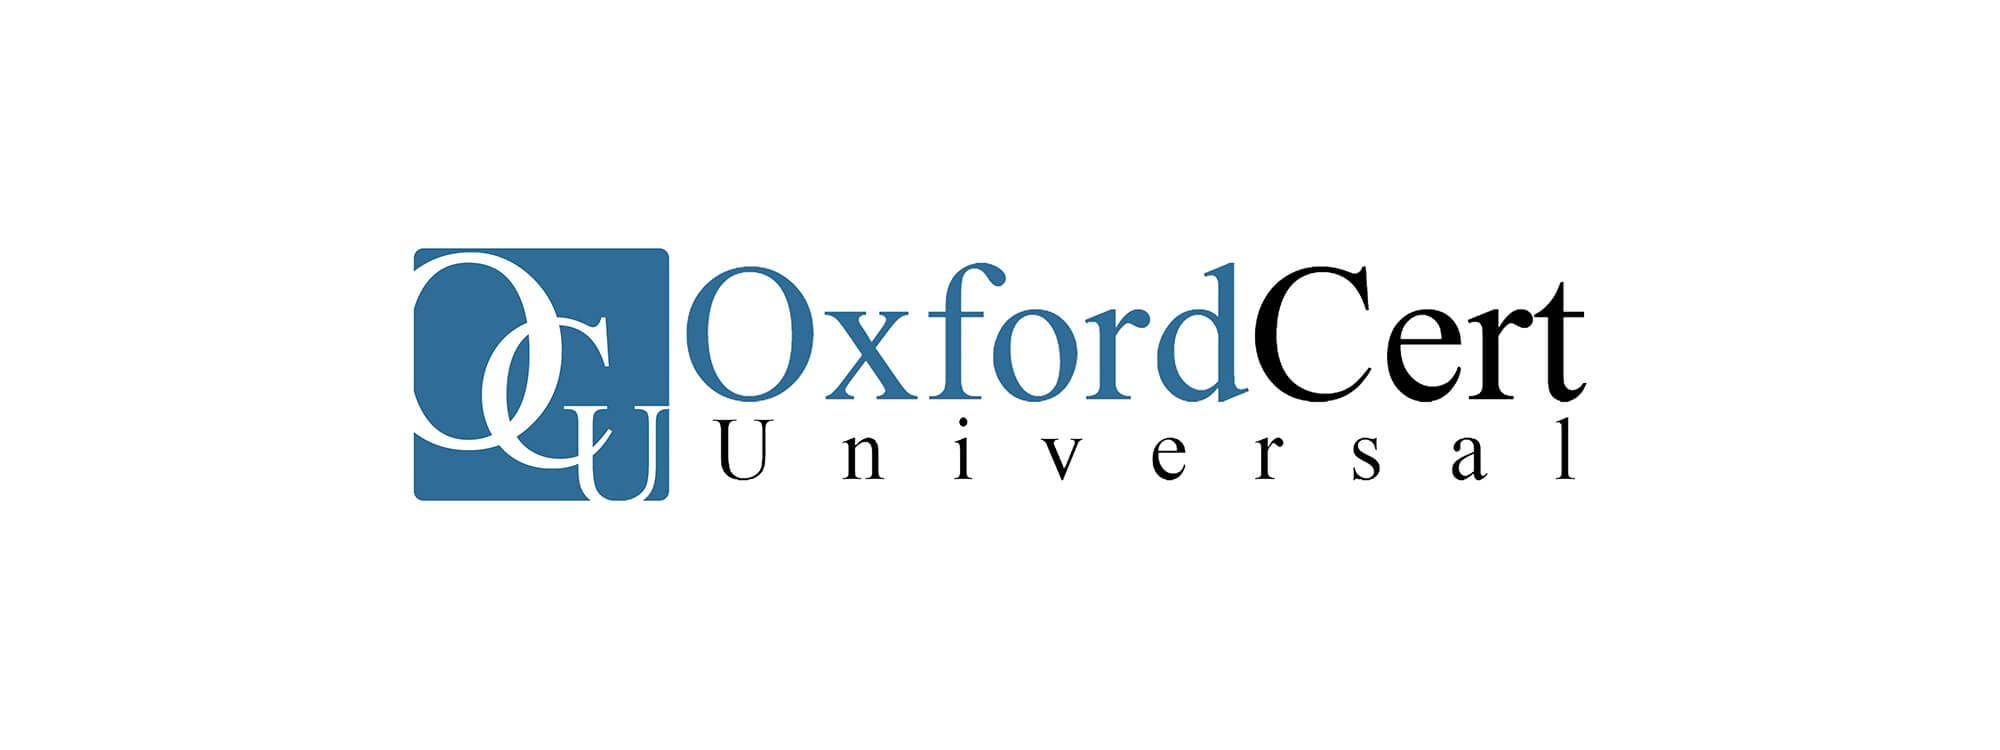 امکان دریافت گواهینامه بین المللی Oxford Universal Cert